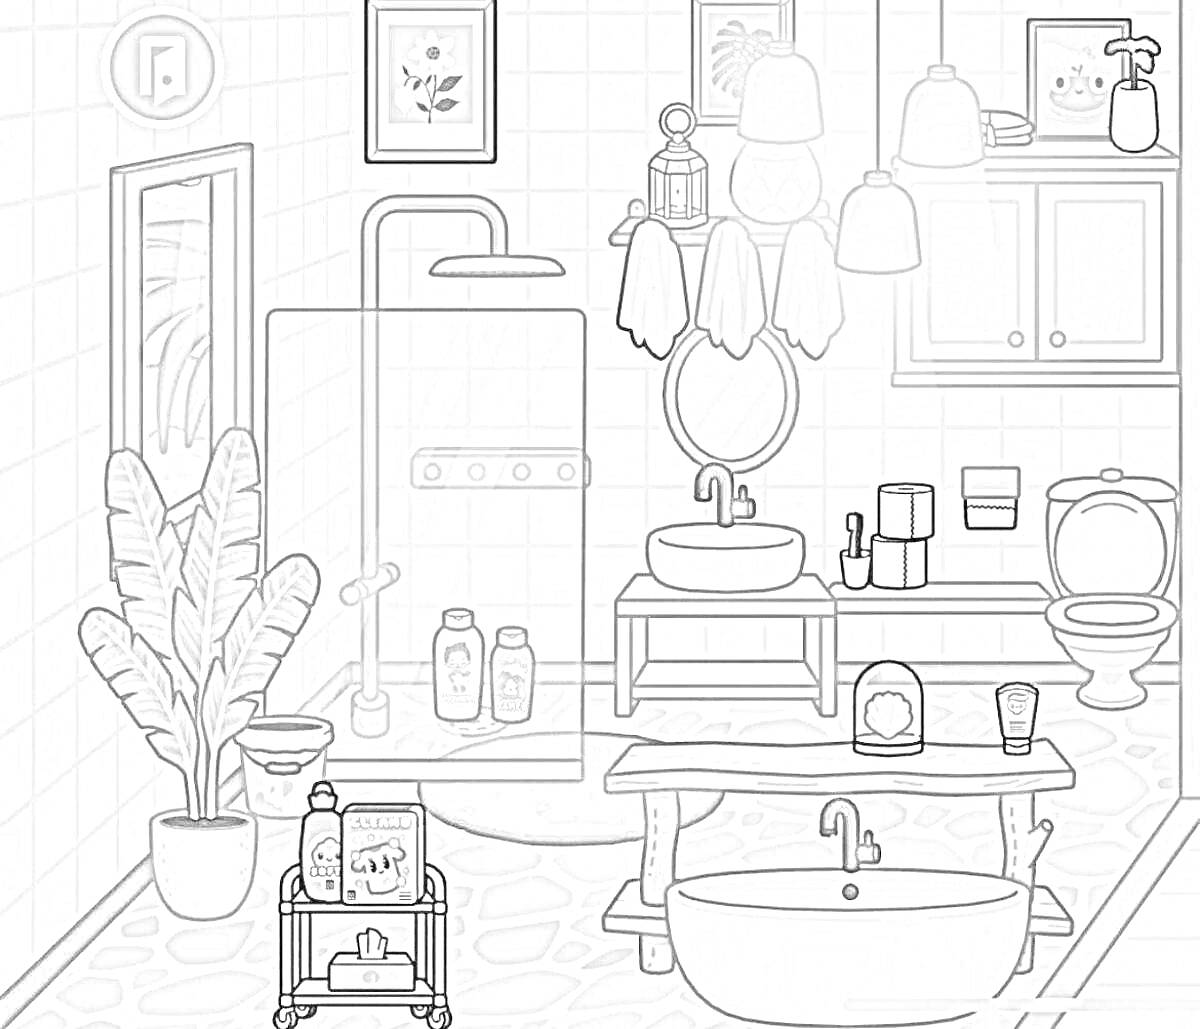 Раскраска Ванная комната в Тока Бока: душ с прозрачной дверью, большое растение в горшке, полочки с косметикой, двойной умывальник с тумбой, ванна на ножках, журнальный столик с косметикой, унитаз, настенные светильники, настенное зеркало, картины на стенах